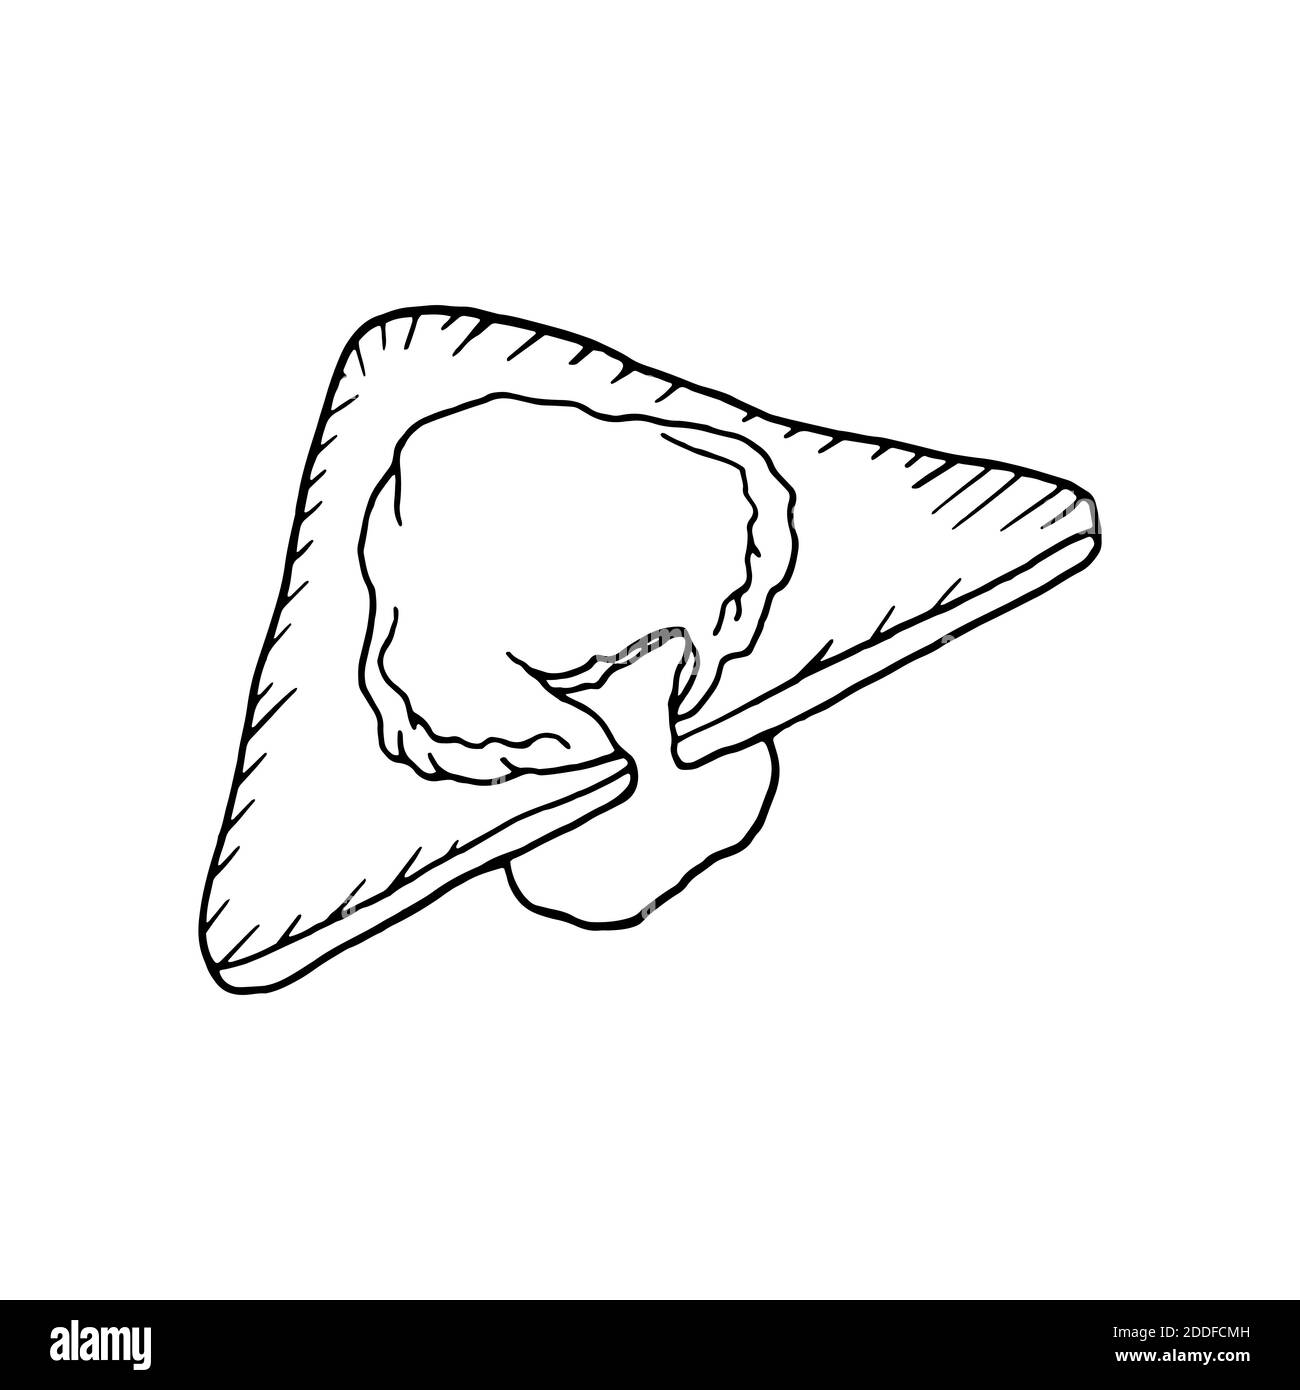 Vektor Hand gezeichnet pochiertes Ei auf Toast. Französisches Gericht. Design Skizzenelement für Menü Café, Bistro, Restaurant, Bäckerei, Etikett und Verpackung. Abb. Stock Vektor